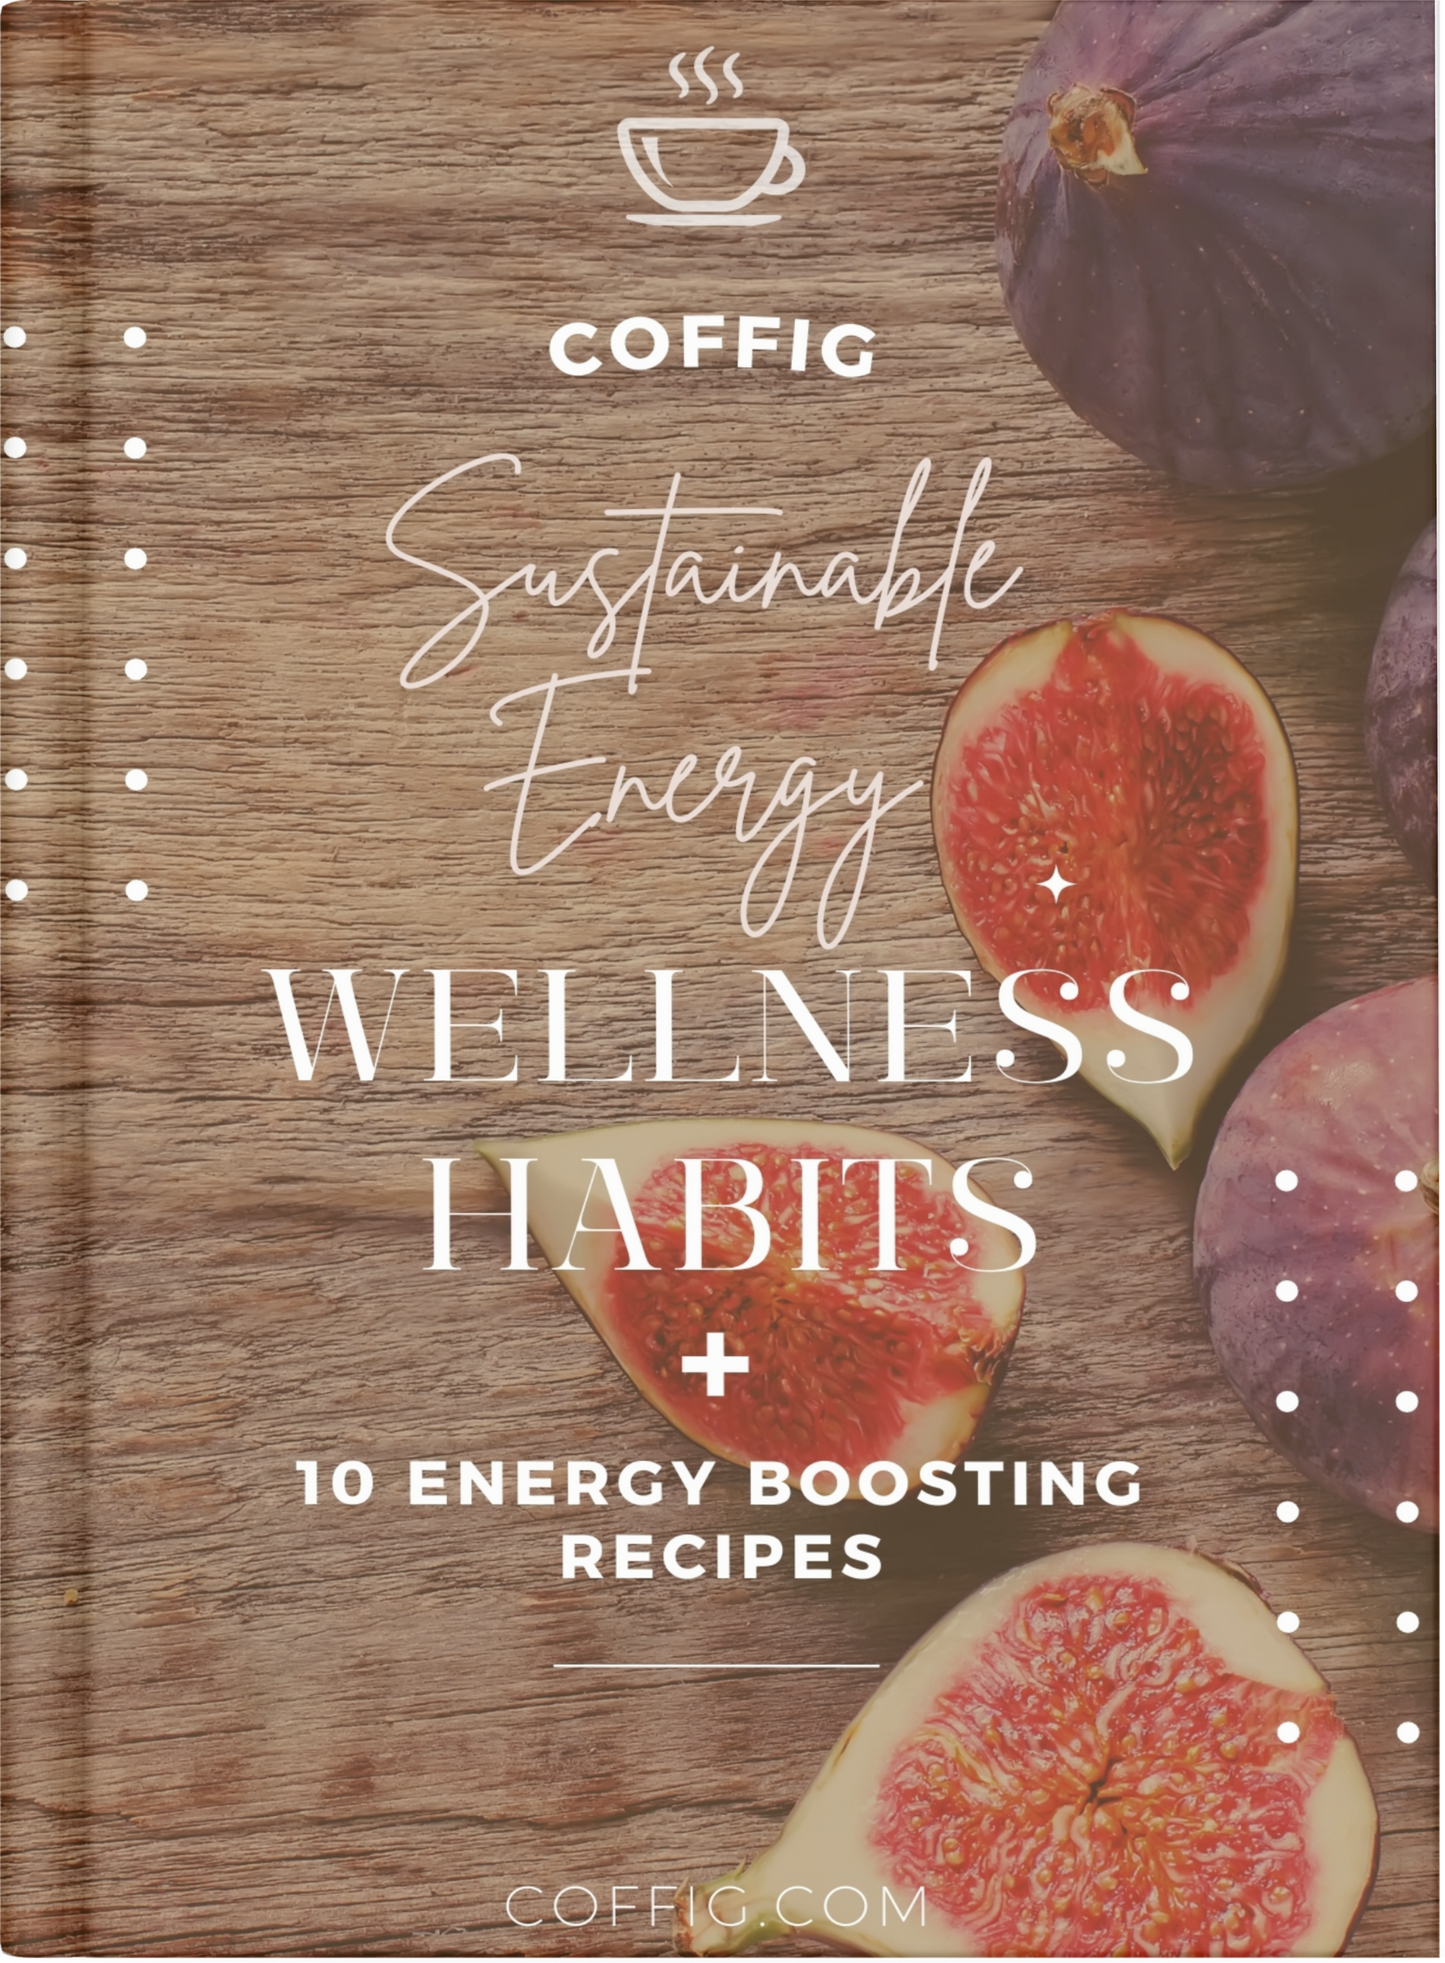 FREE 8 WELLNESS HABITS & COFFIG RECIPES e-BOOK